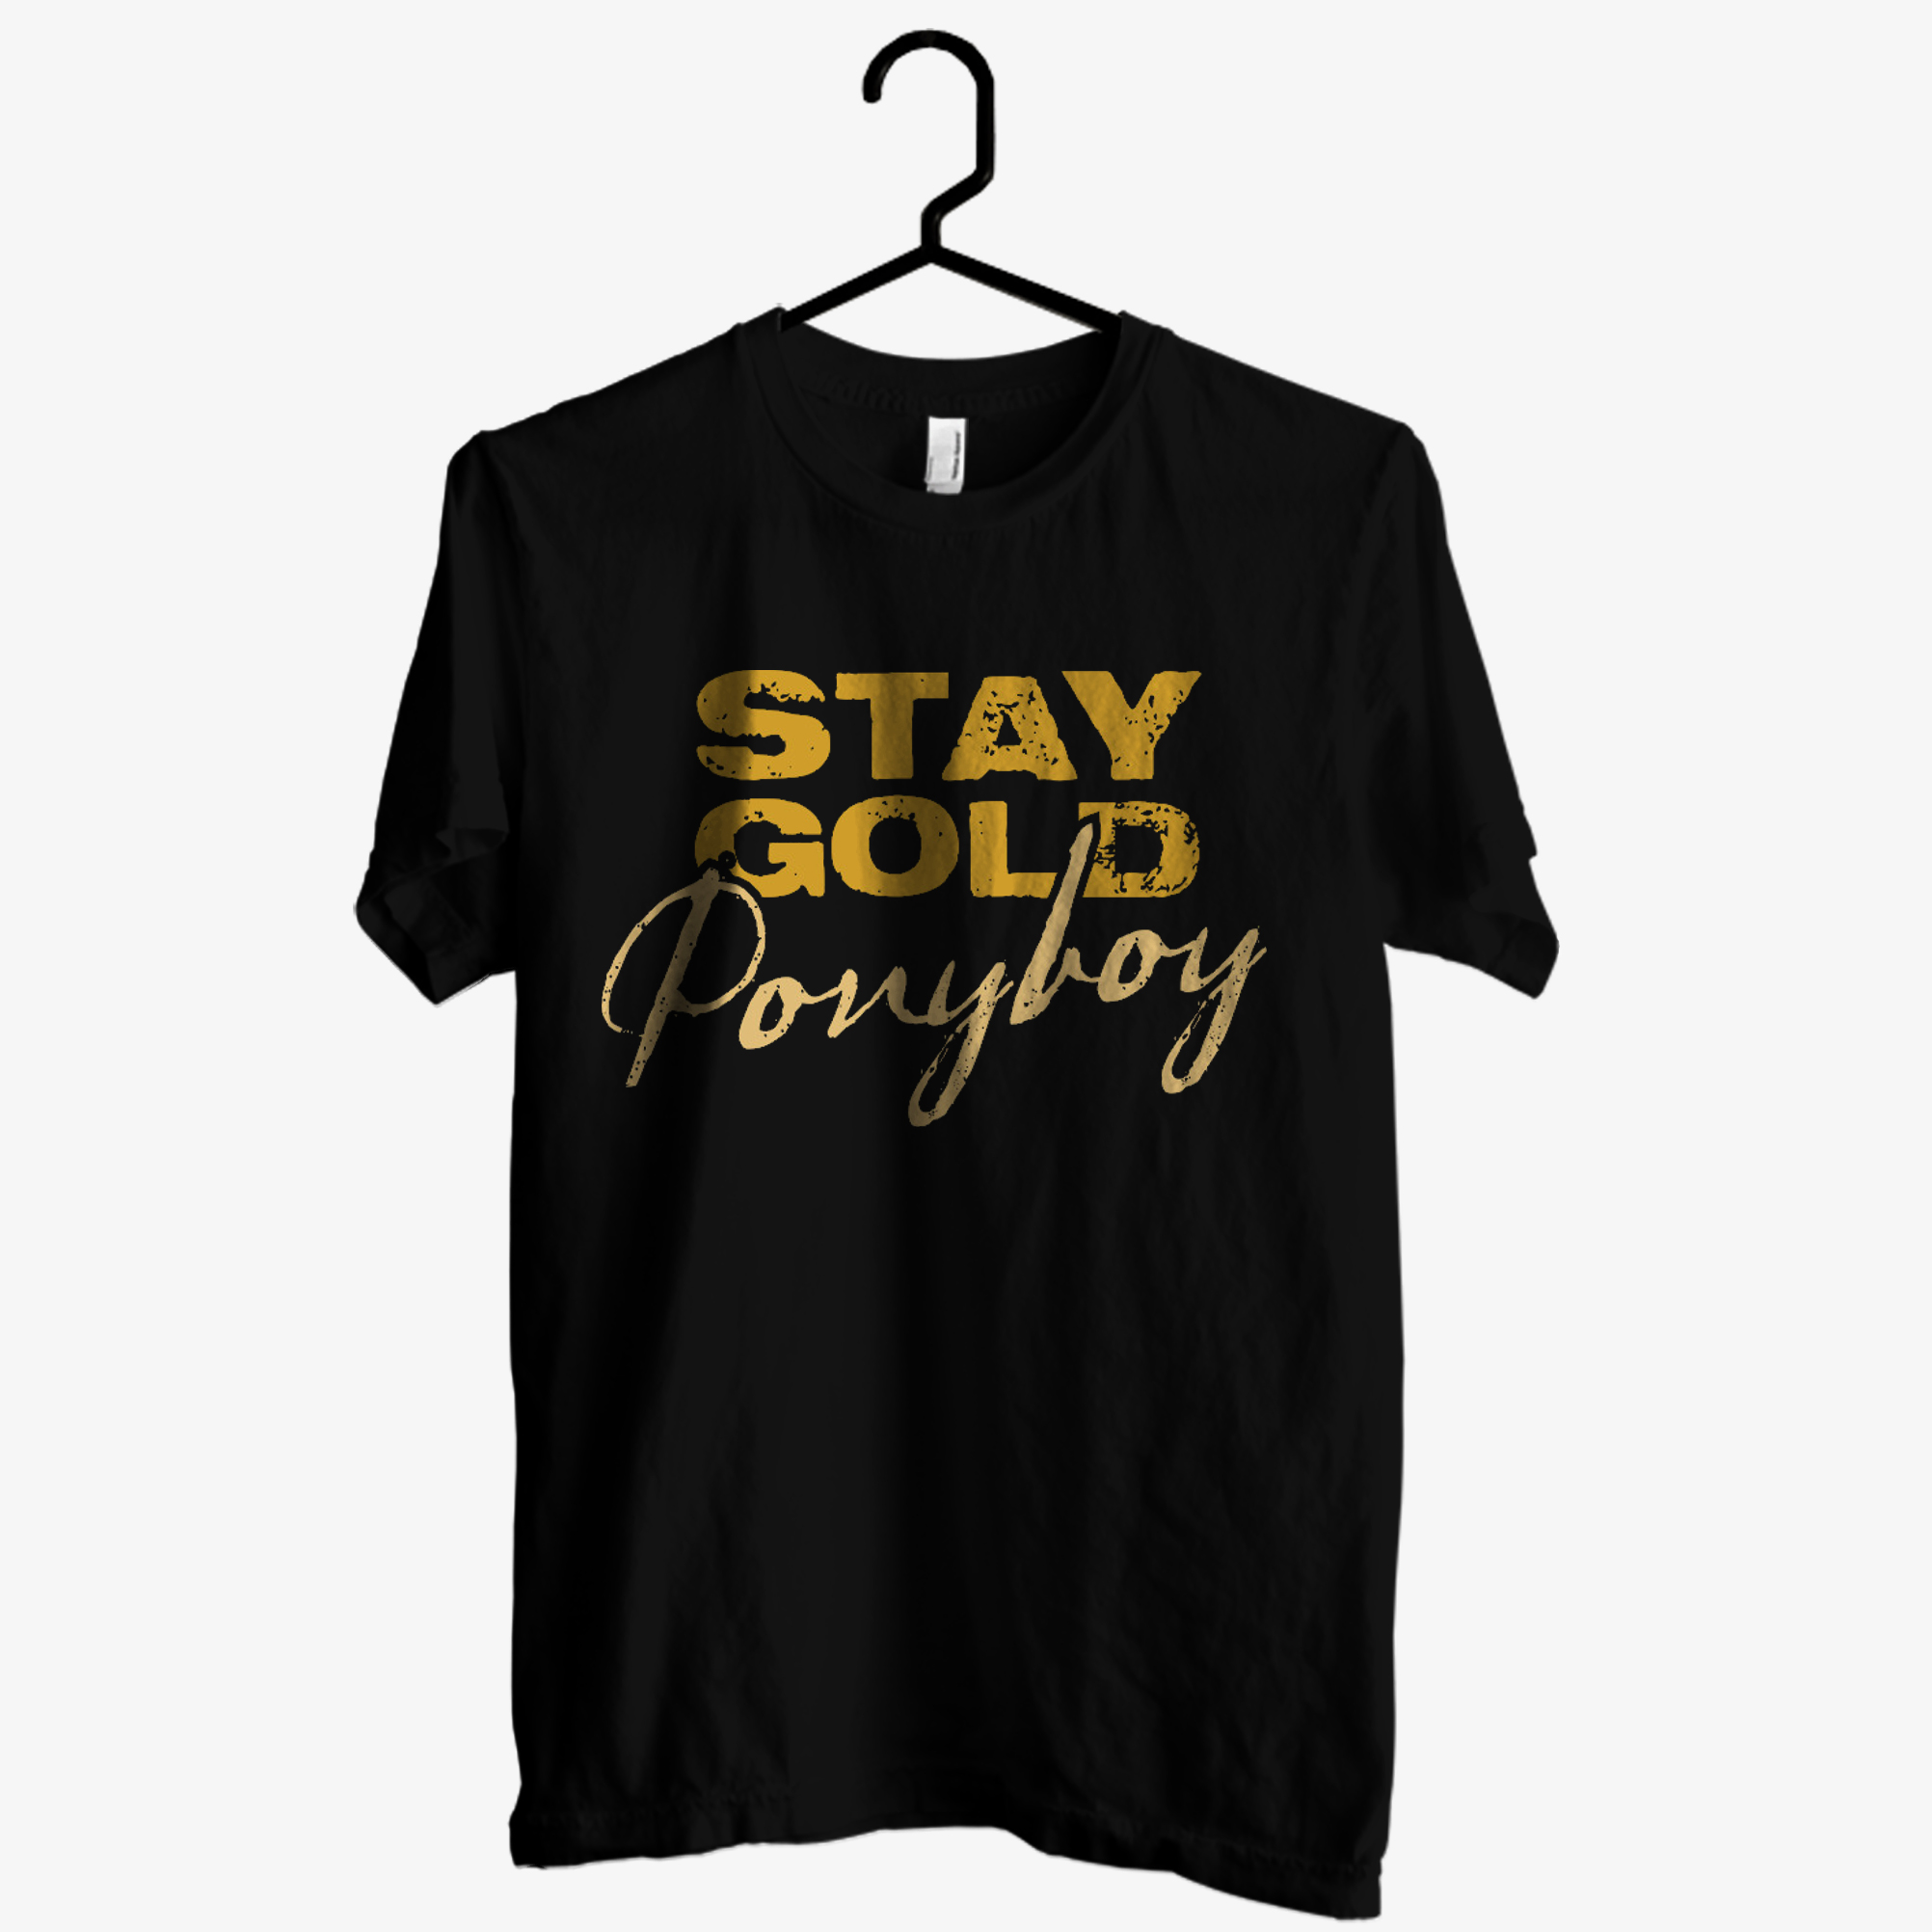 Stay Gold Ponyboy T shirt